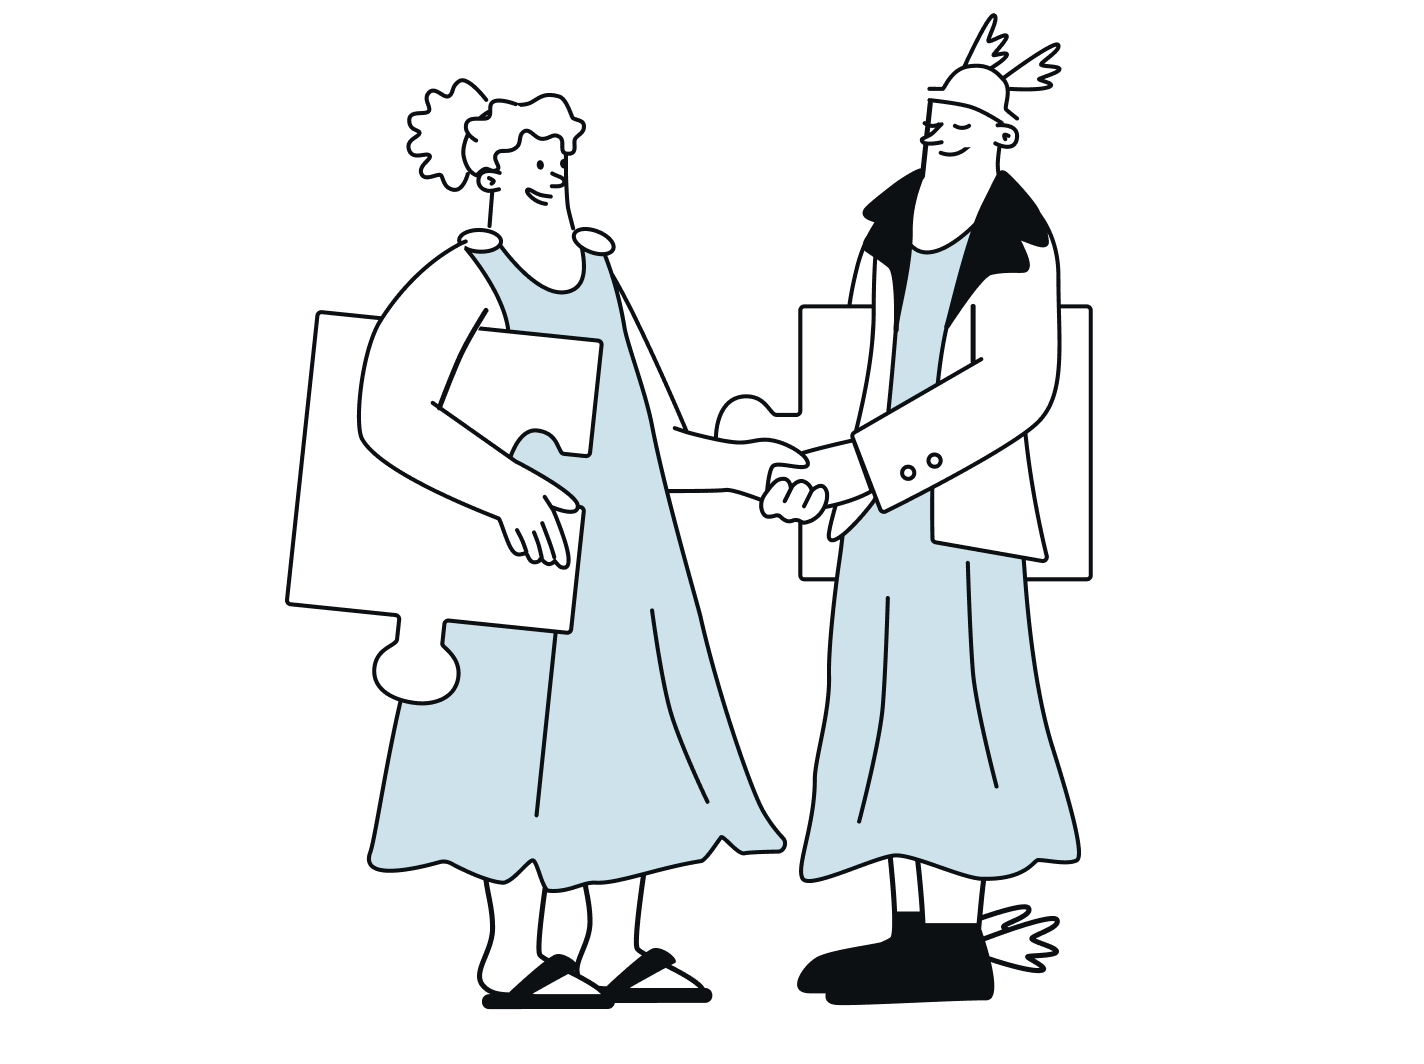 Artemisa y Hermes se dan la mano mientras llevan unas piezas de puzle de gran tamaño